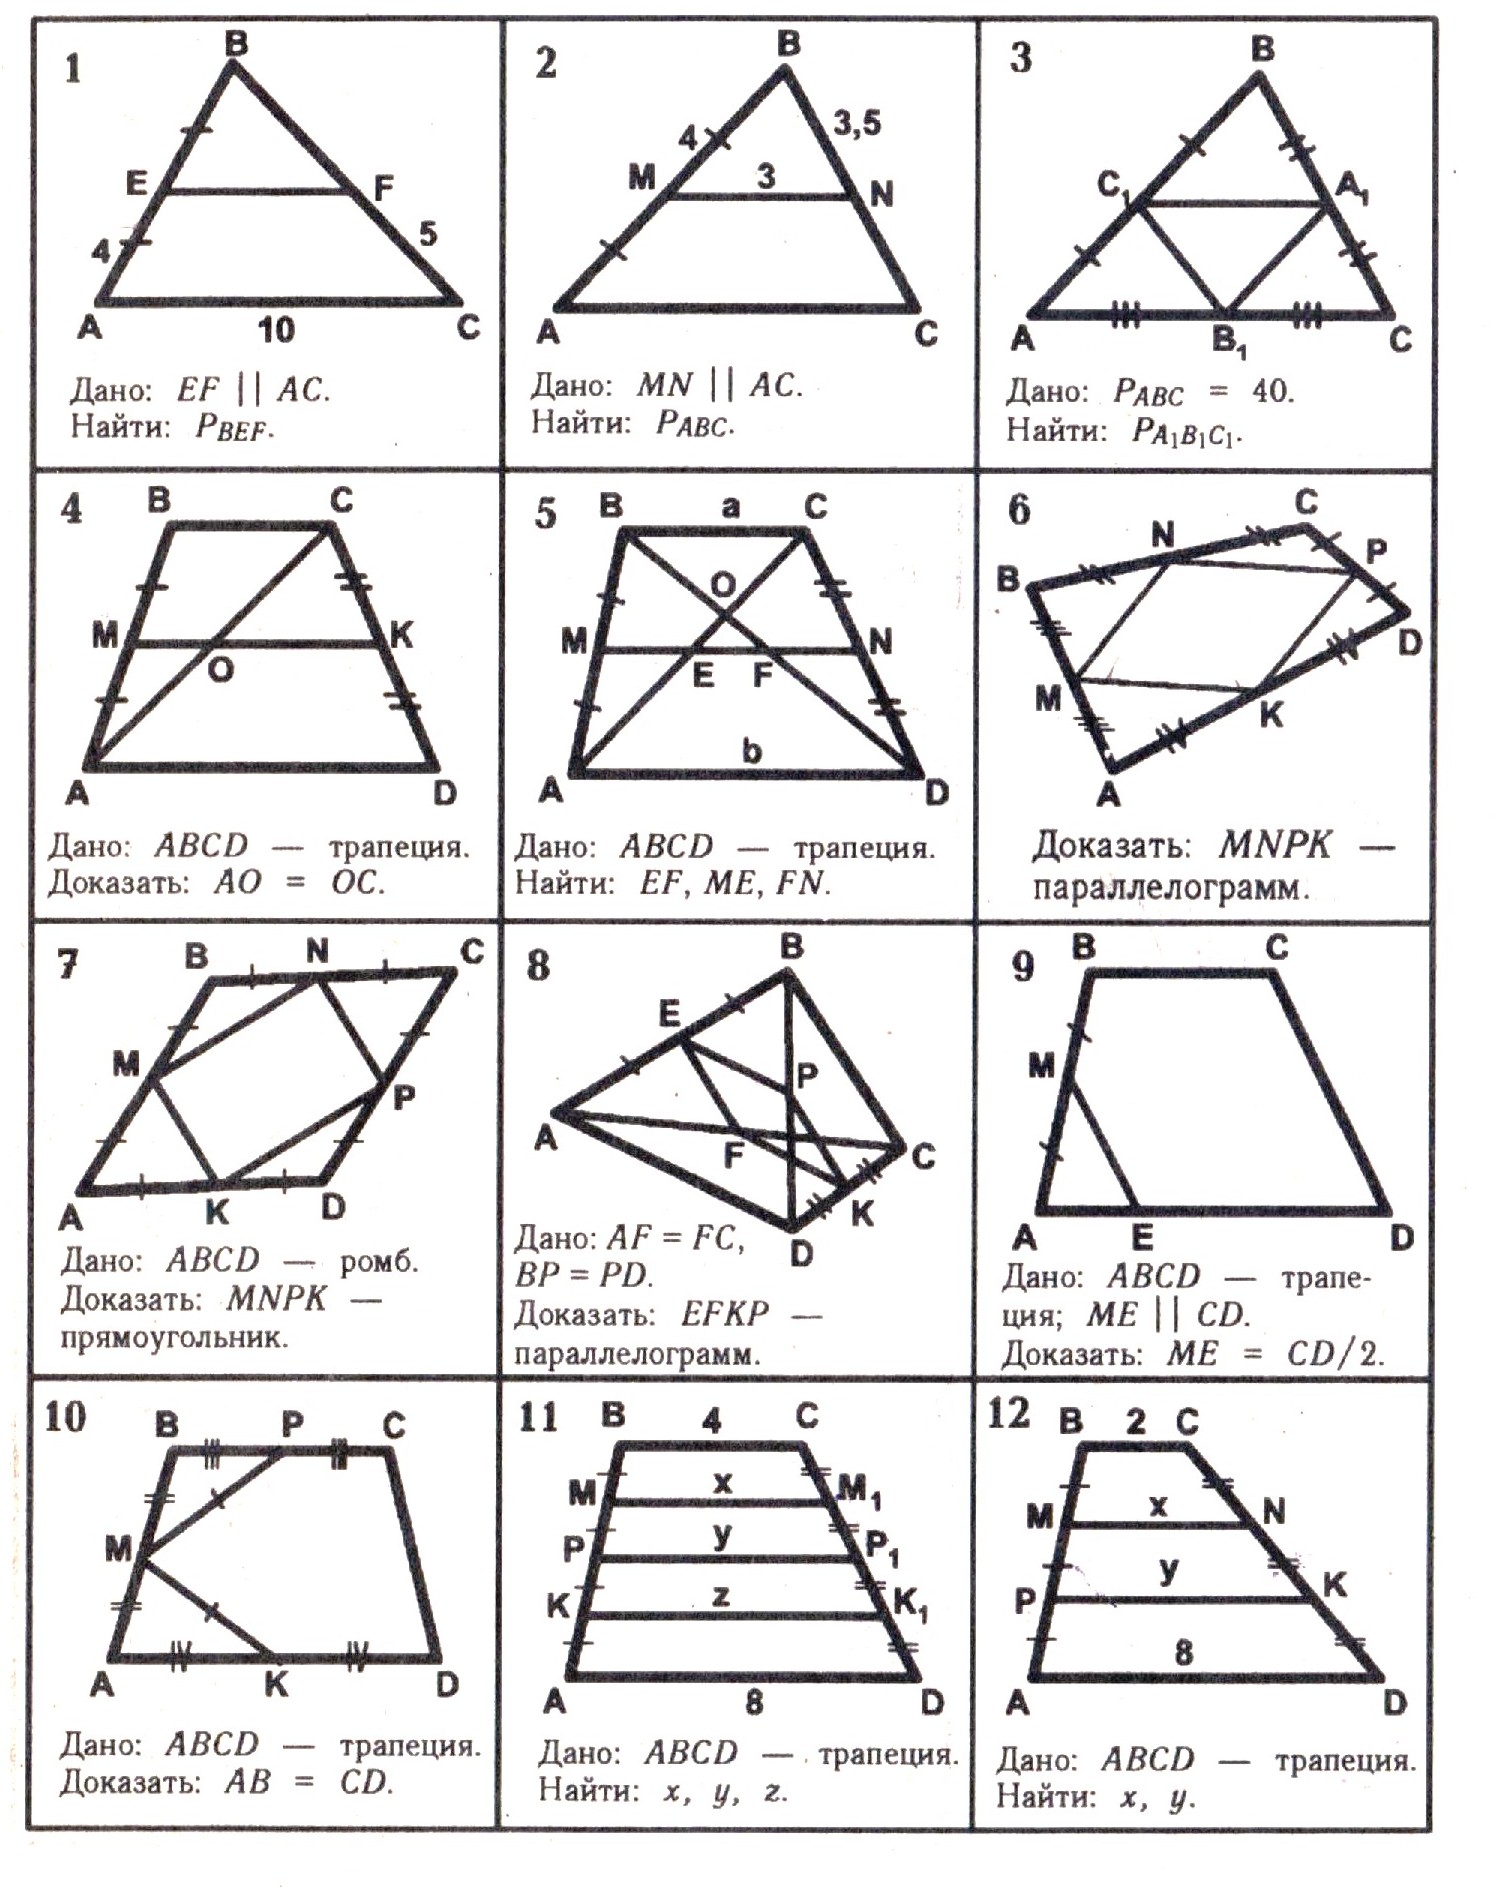 Конспект урока средняя линия треугольника